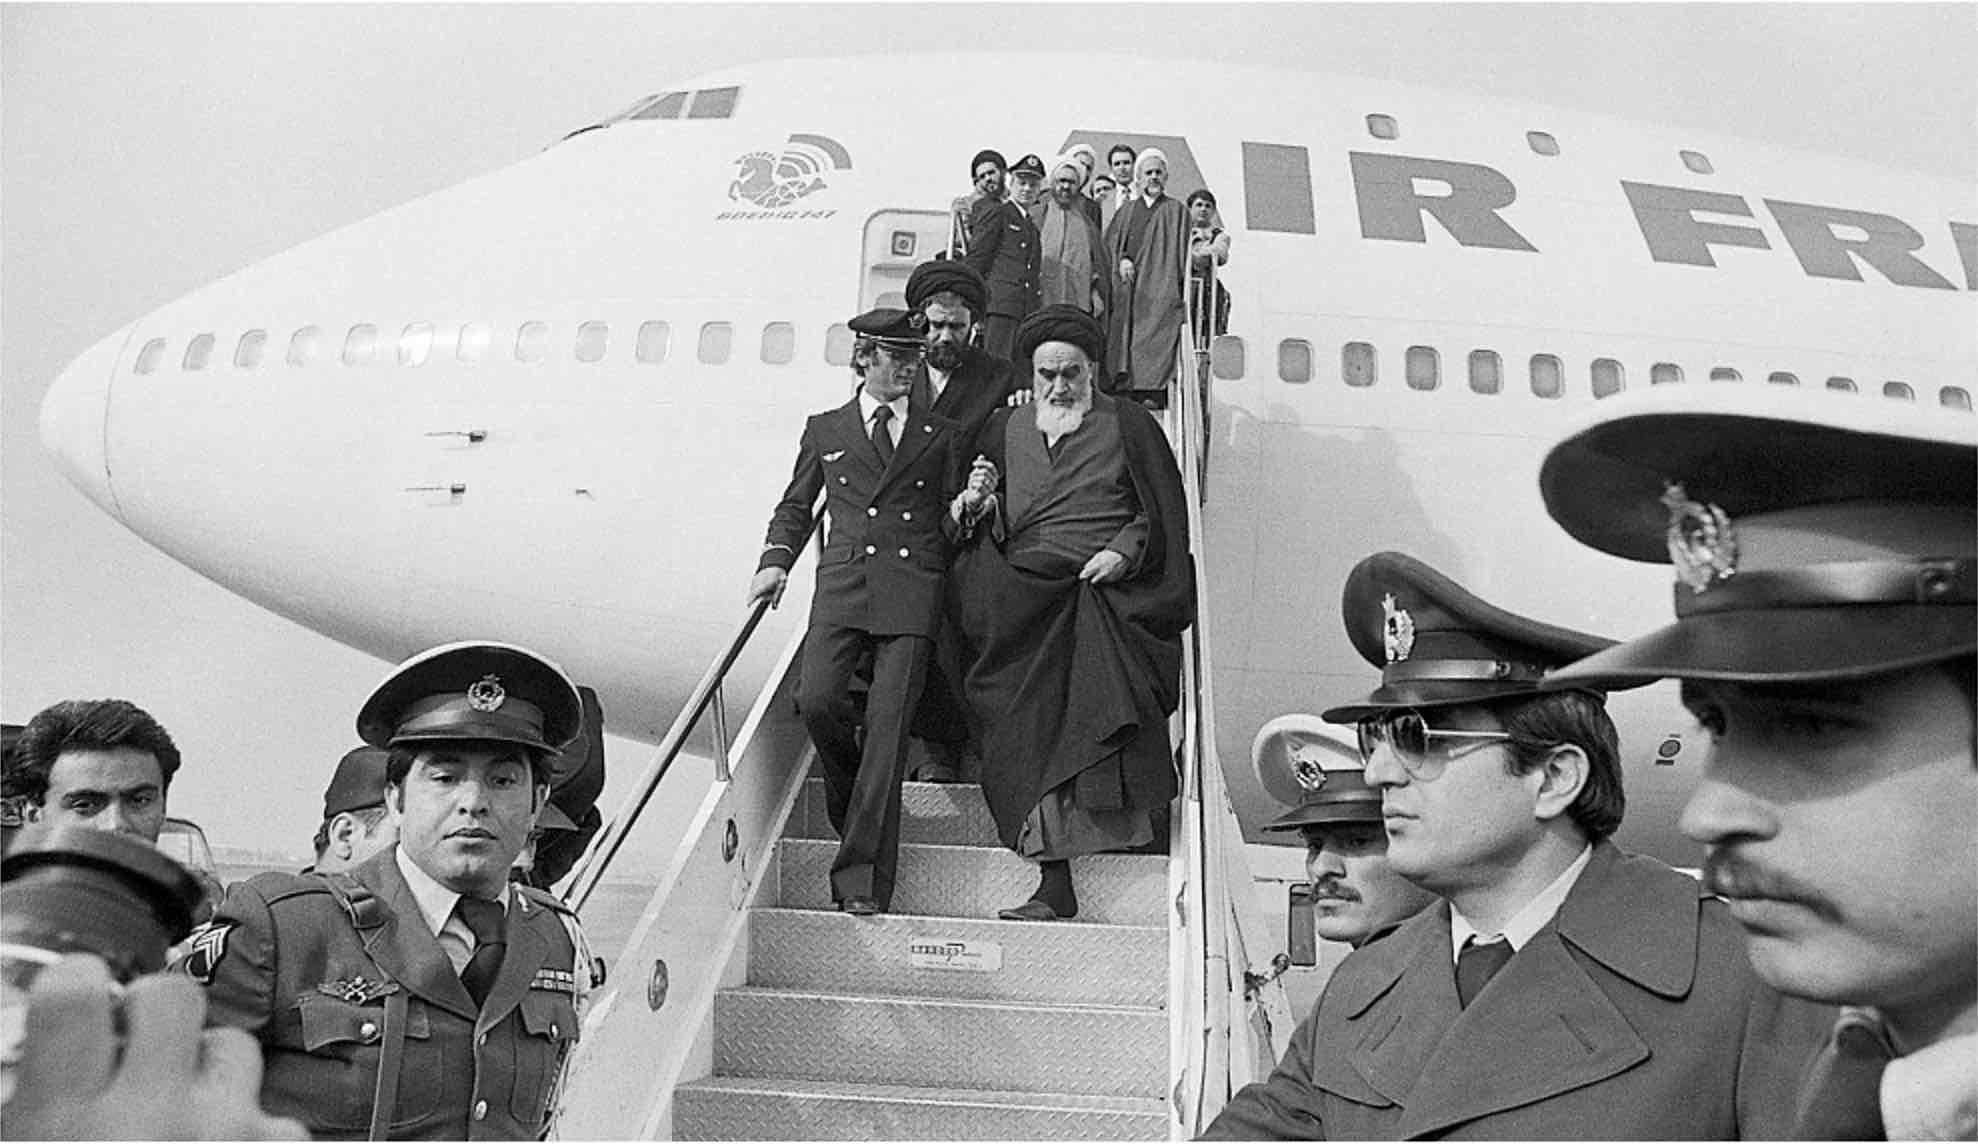 El ayatolá Ruhollah Jomeini sale del avión a su regreso a Irán.